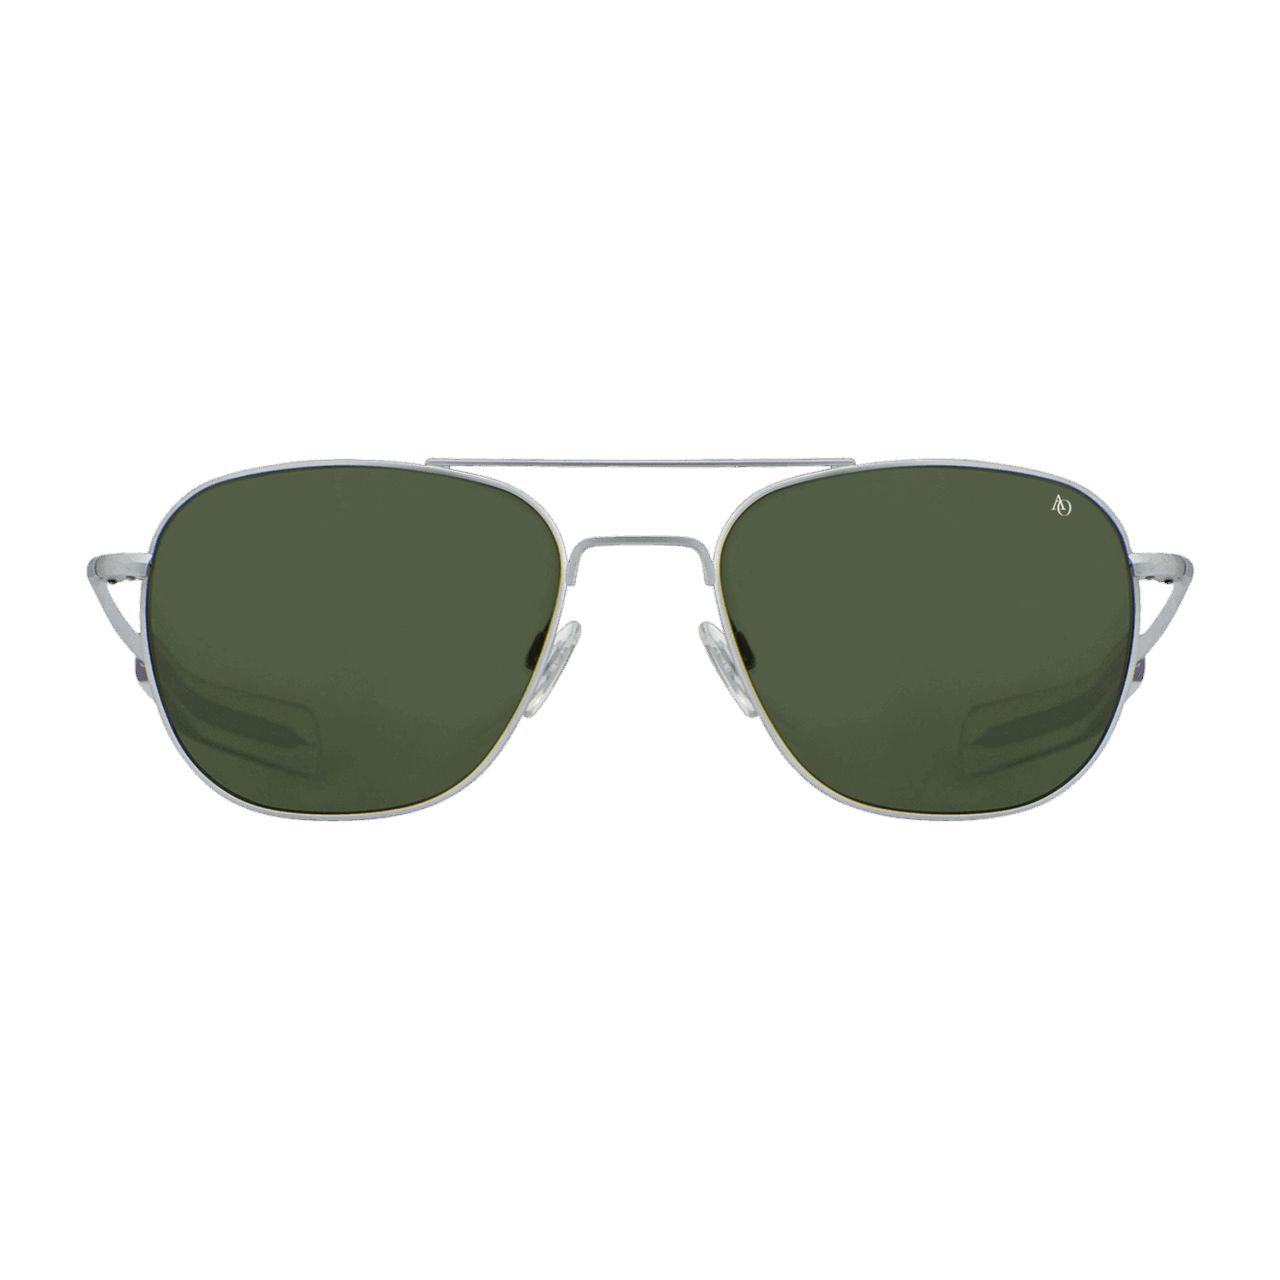 American Optical Pilotenbrille - Silber Matt / True Color grün